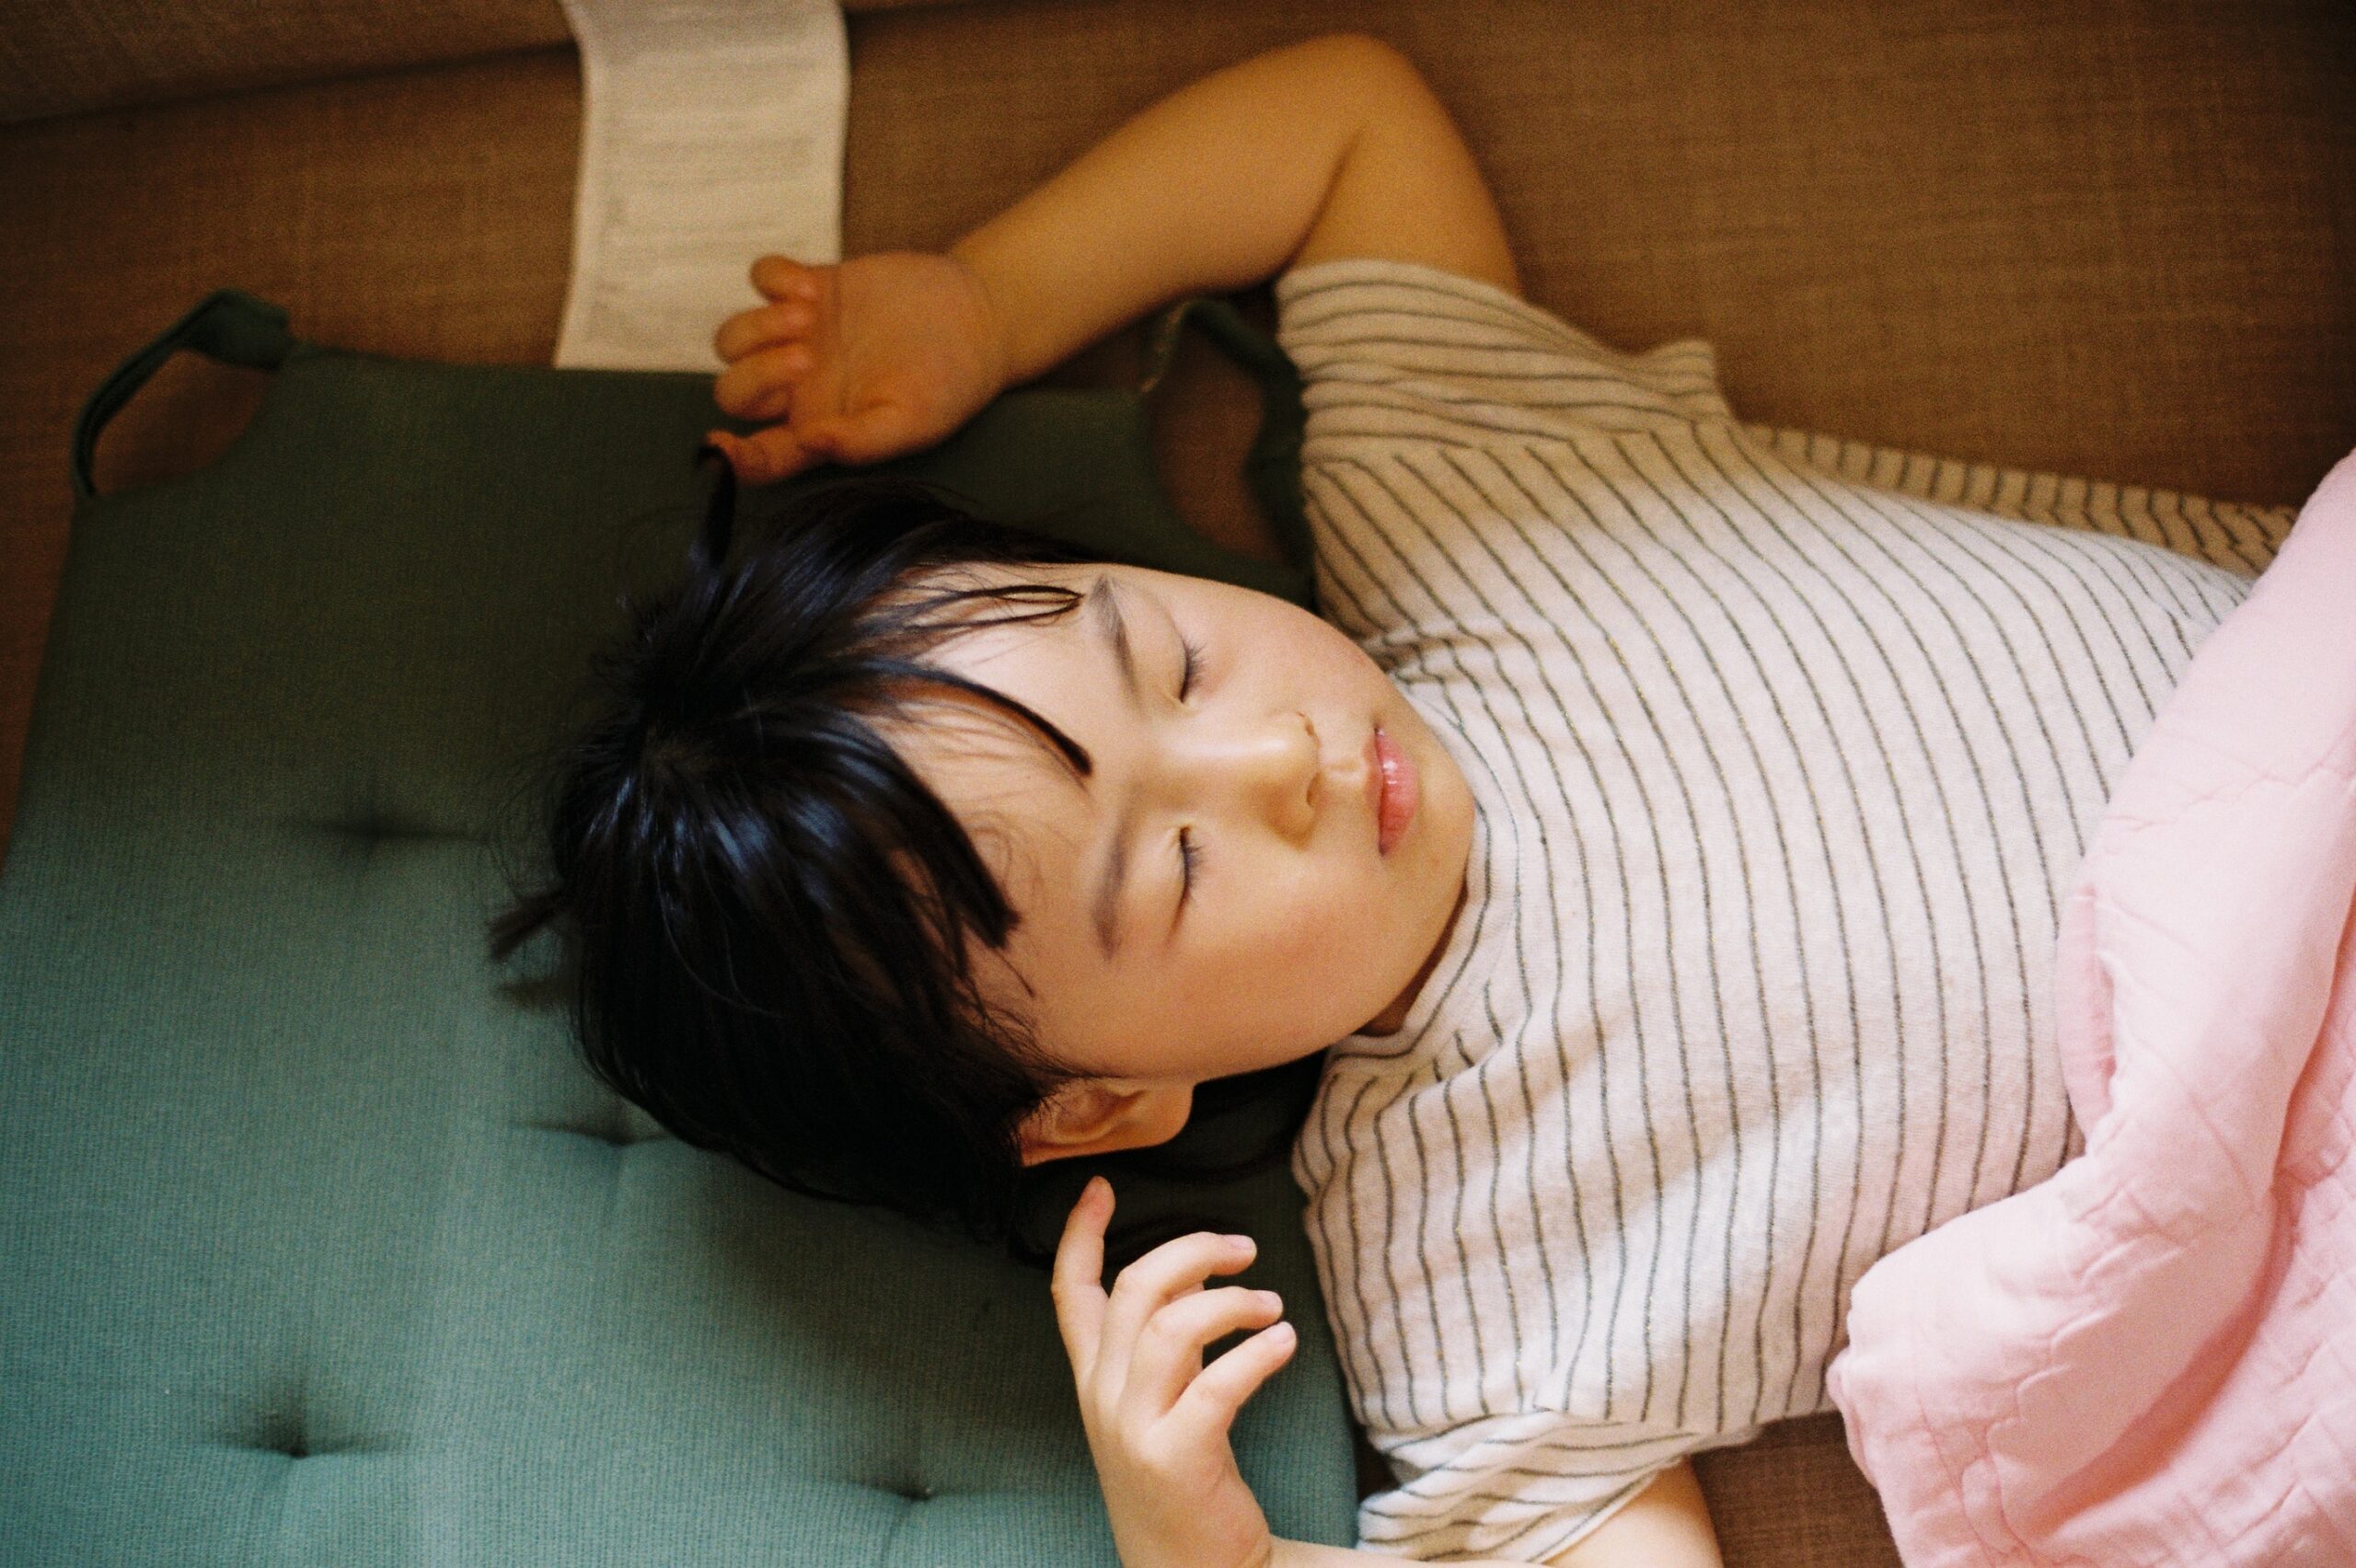 "One in 20 children is affected": Specialists advocate sleep apnea screening